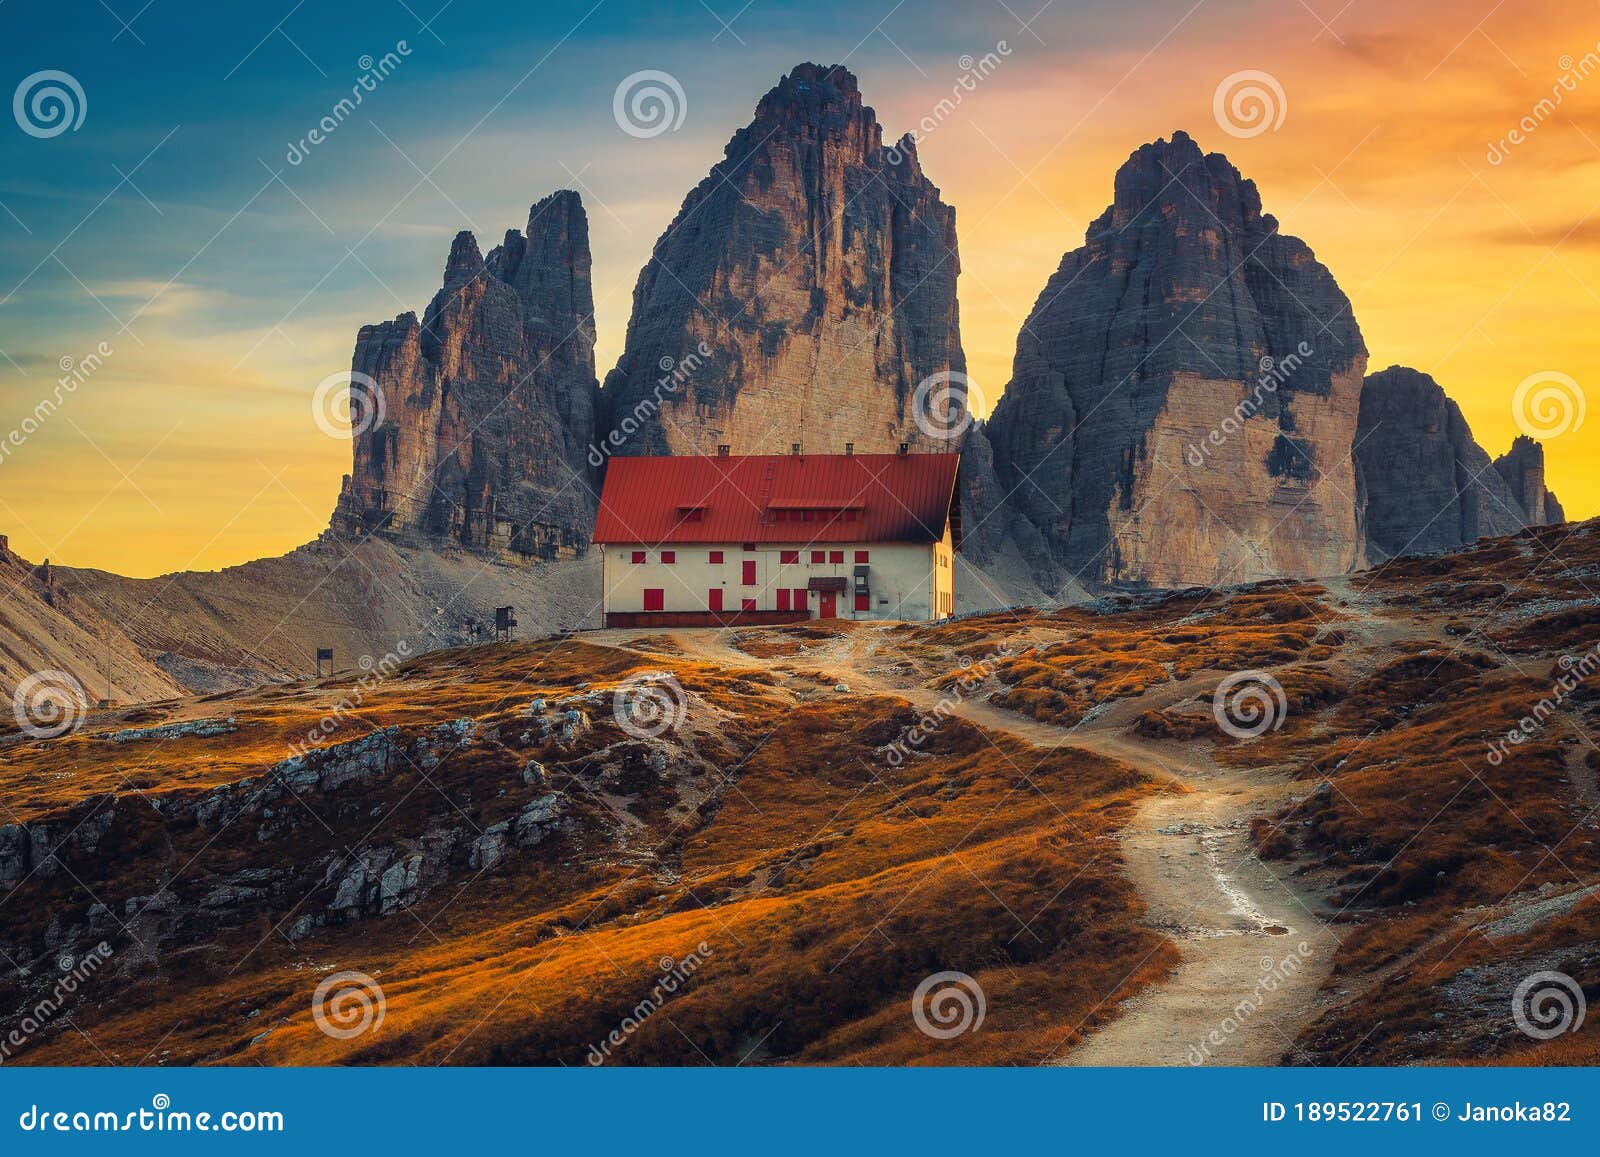 famous tre cime di lavaredo peaks at sunset, dolomites, italy